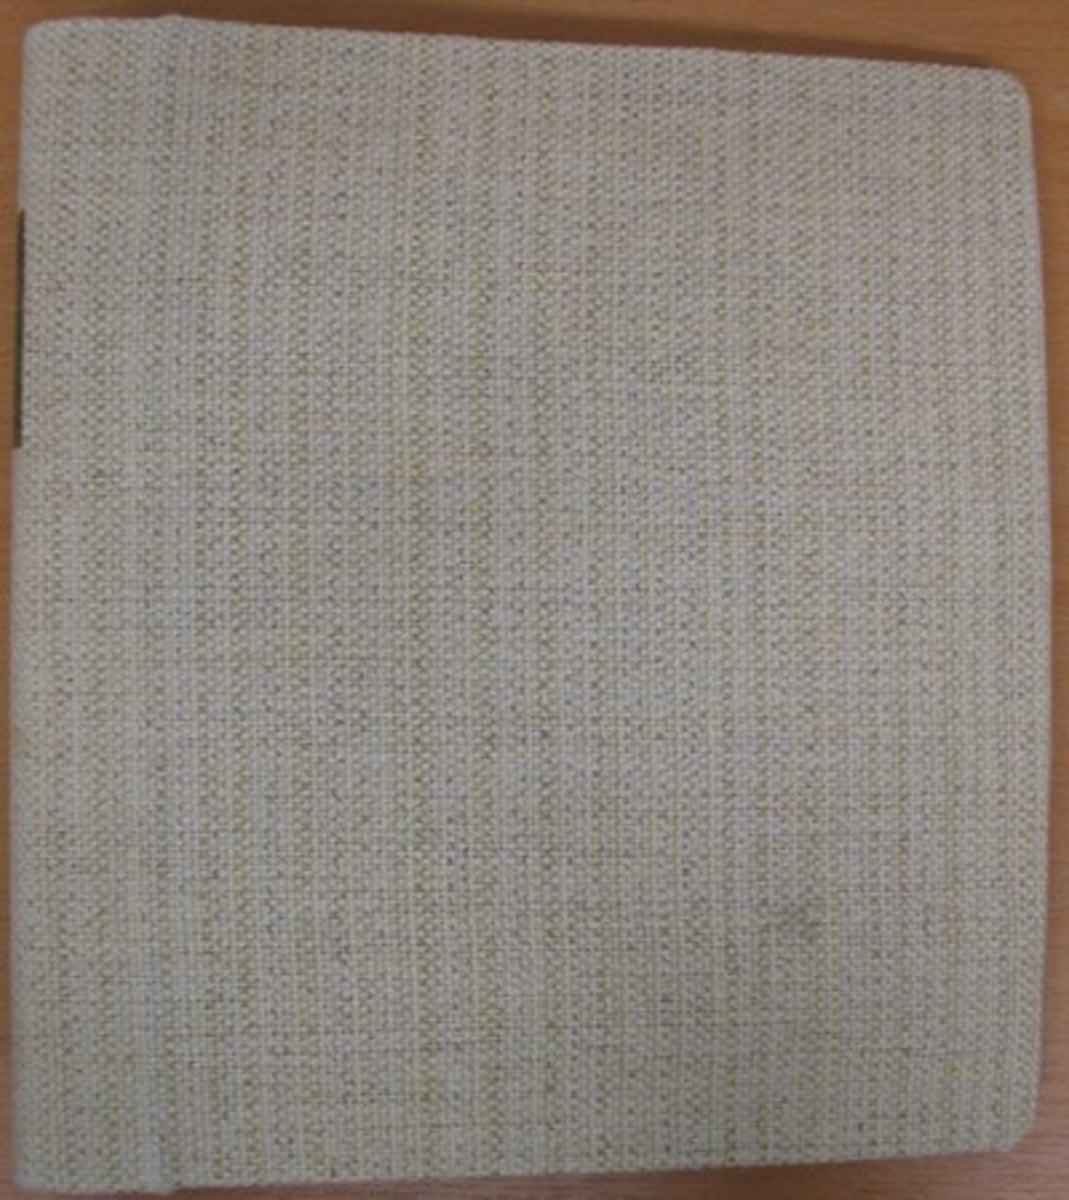 Pärm: ''Praktisk vävbok'' pärm klädd med grovt linne. Pärmen är handskriven och innehåller beskrivning av uppsättningar, varpordningar, mönsterindelningar, inklistrade textilprov m.m.